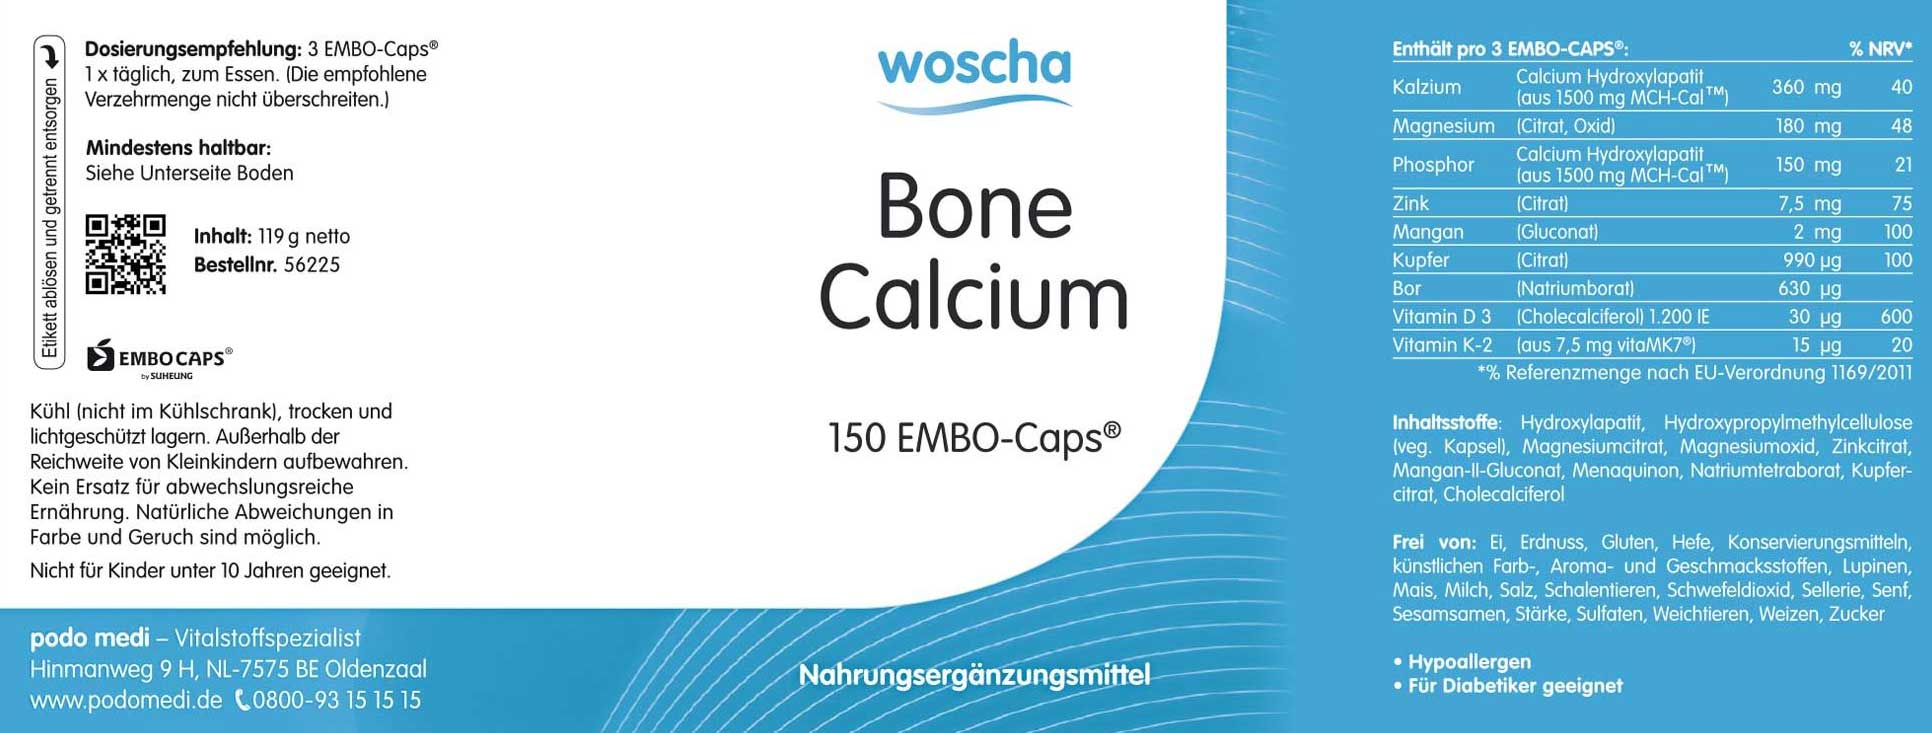 Woscha Bone Calcium von podo medi beinhaltet 150 Kapseln Etikett